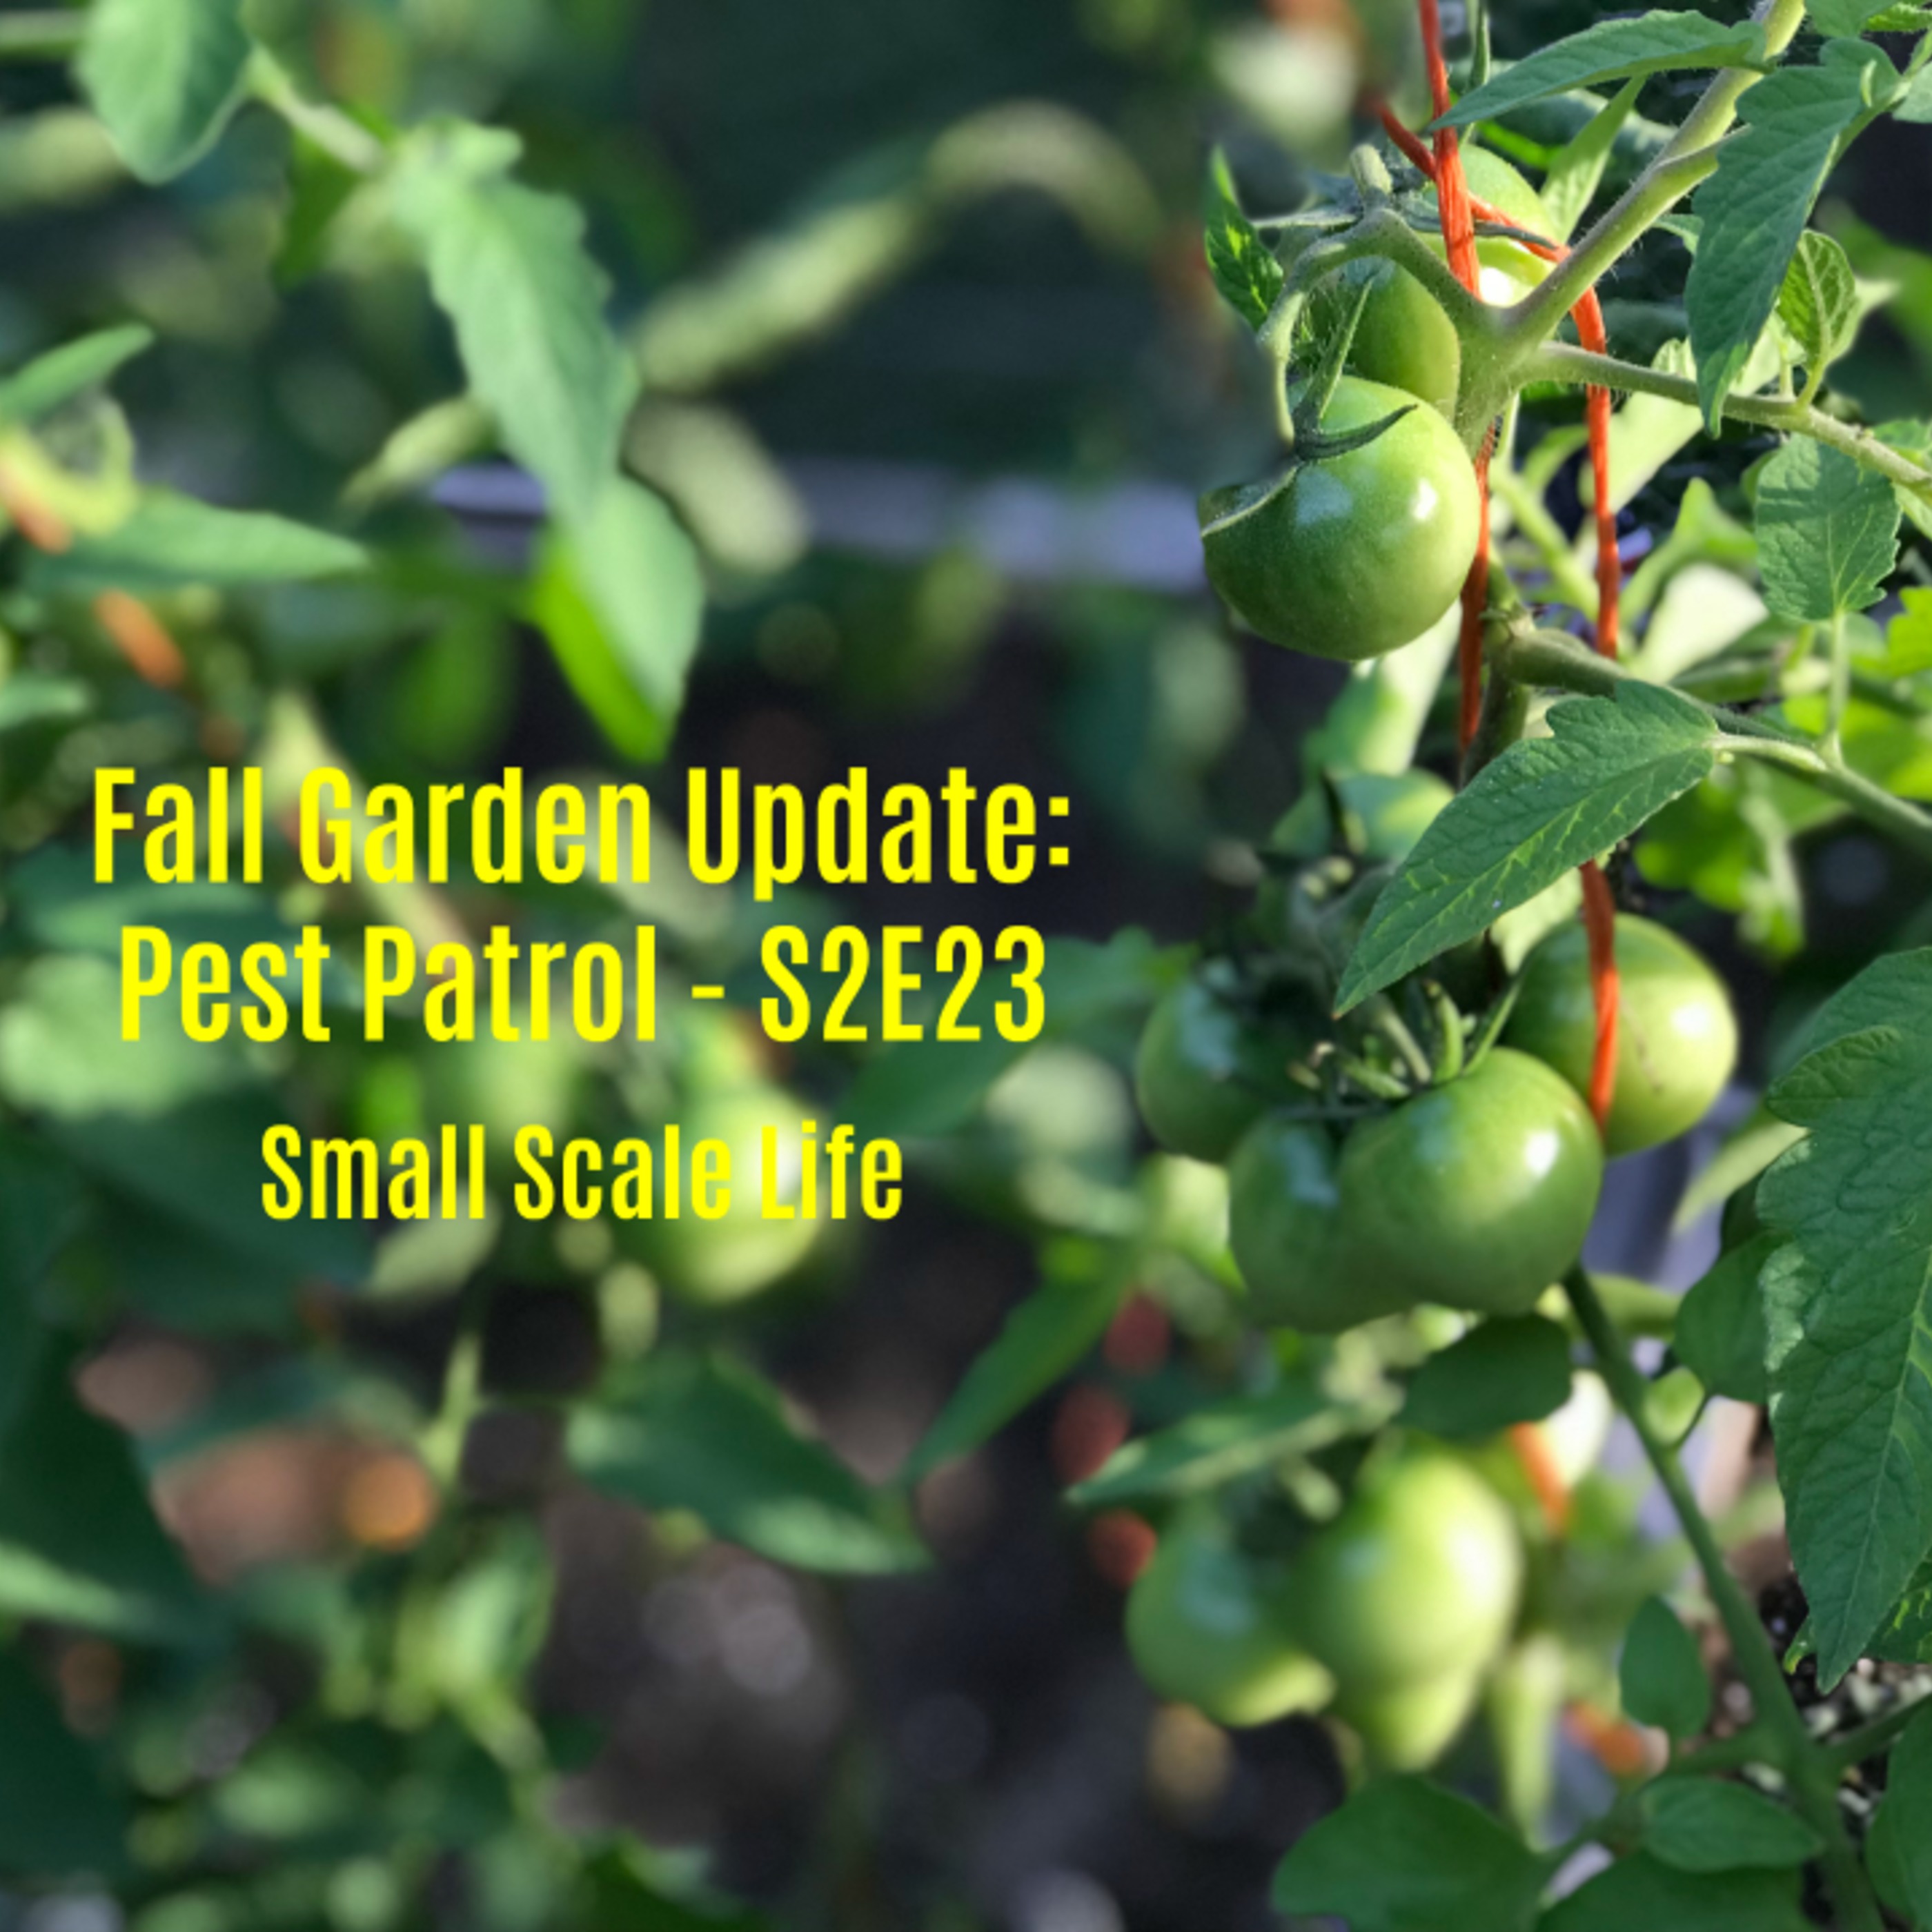 Fall Garden Update: Pest Patrol - S2E23